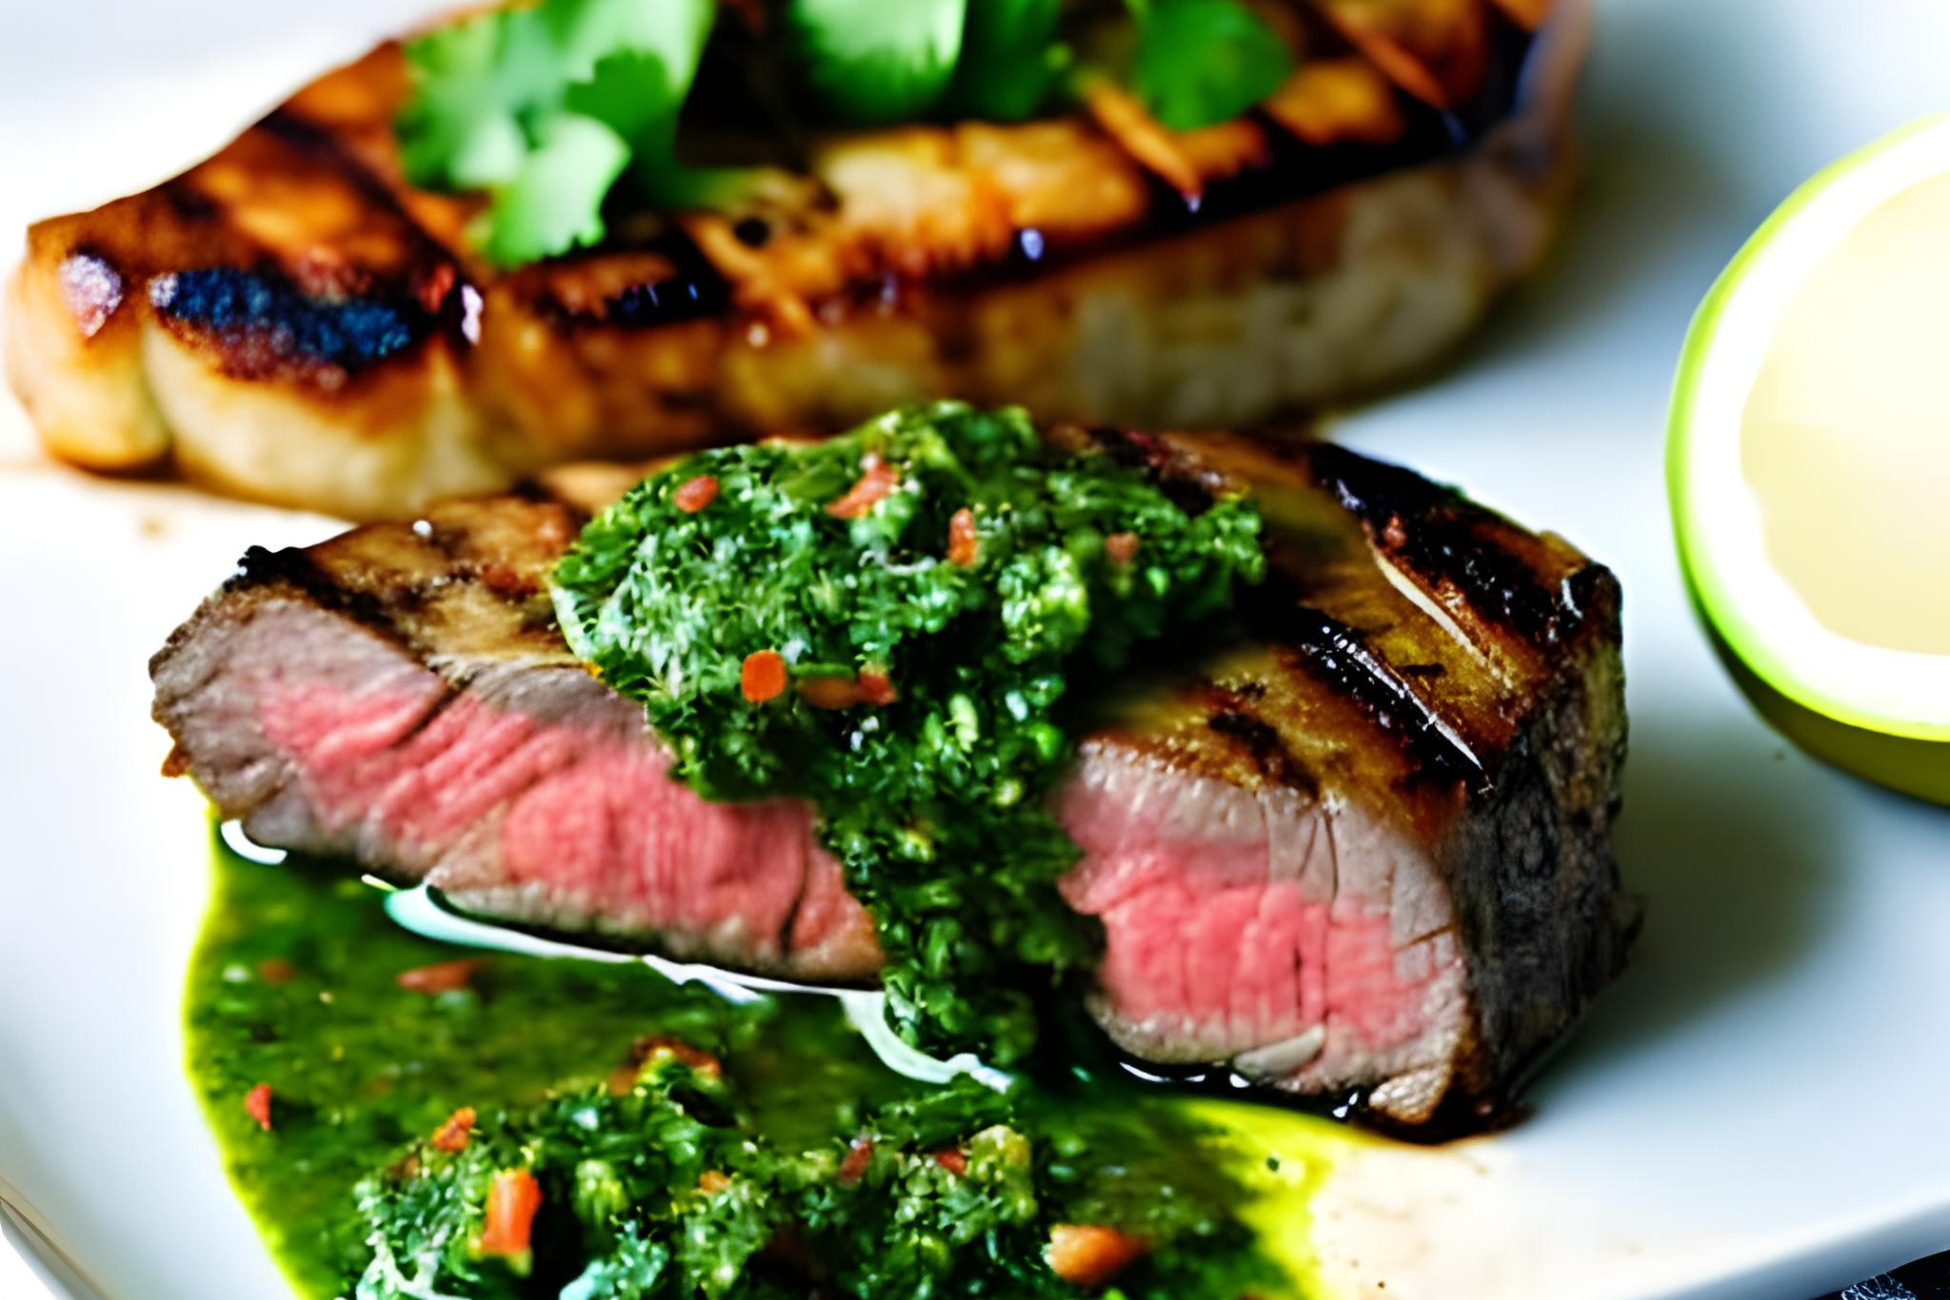 Argentinean Chimichurri Steak Recipe